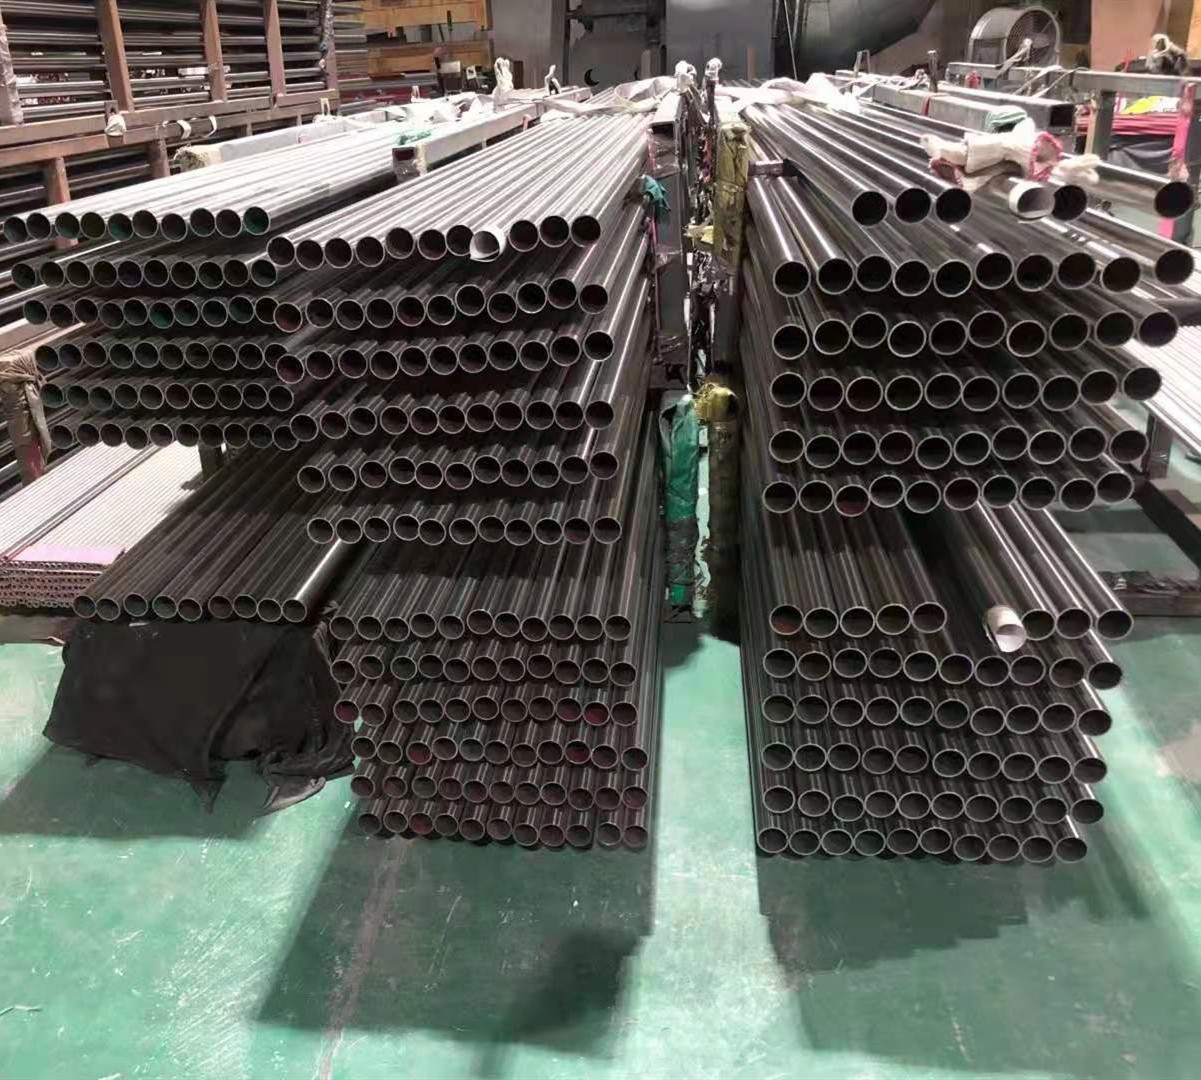 Stainless Steel Tube Pipe For Handrial Or Railing Balustrade Post